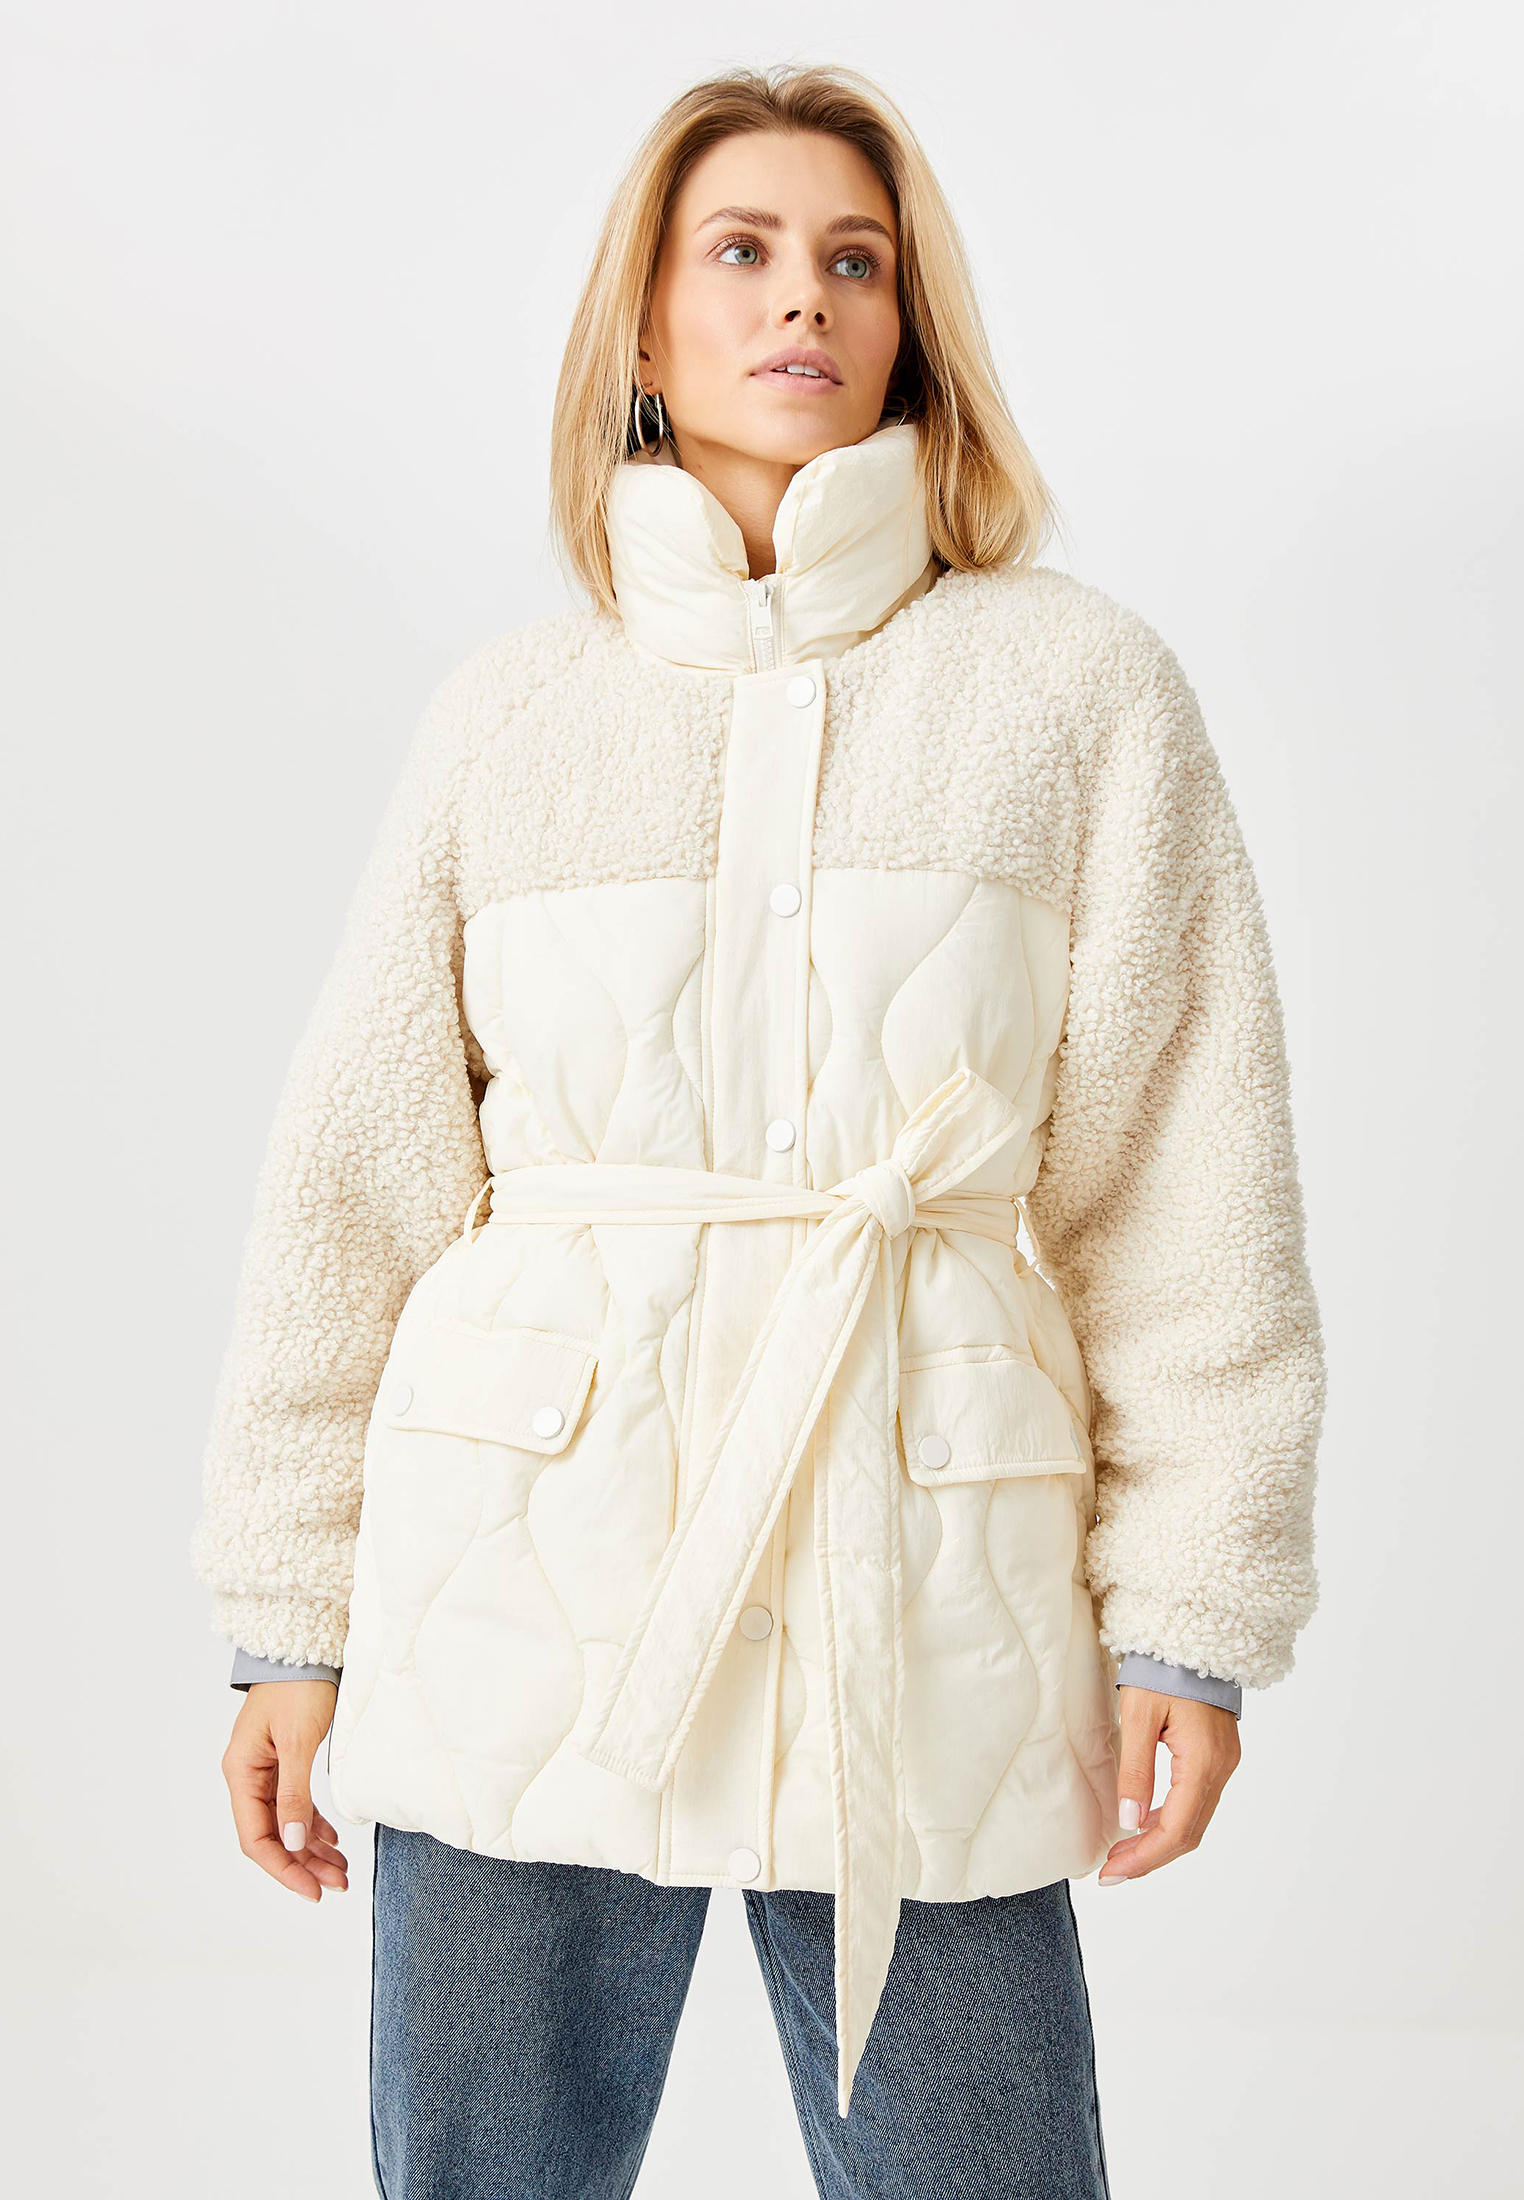 Куртка утепленная Sela, цвет: бежевый, MP002XW0AKOW — купить в интернет-магазине Lamoda